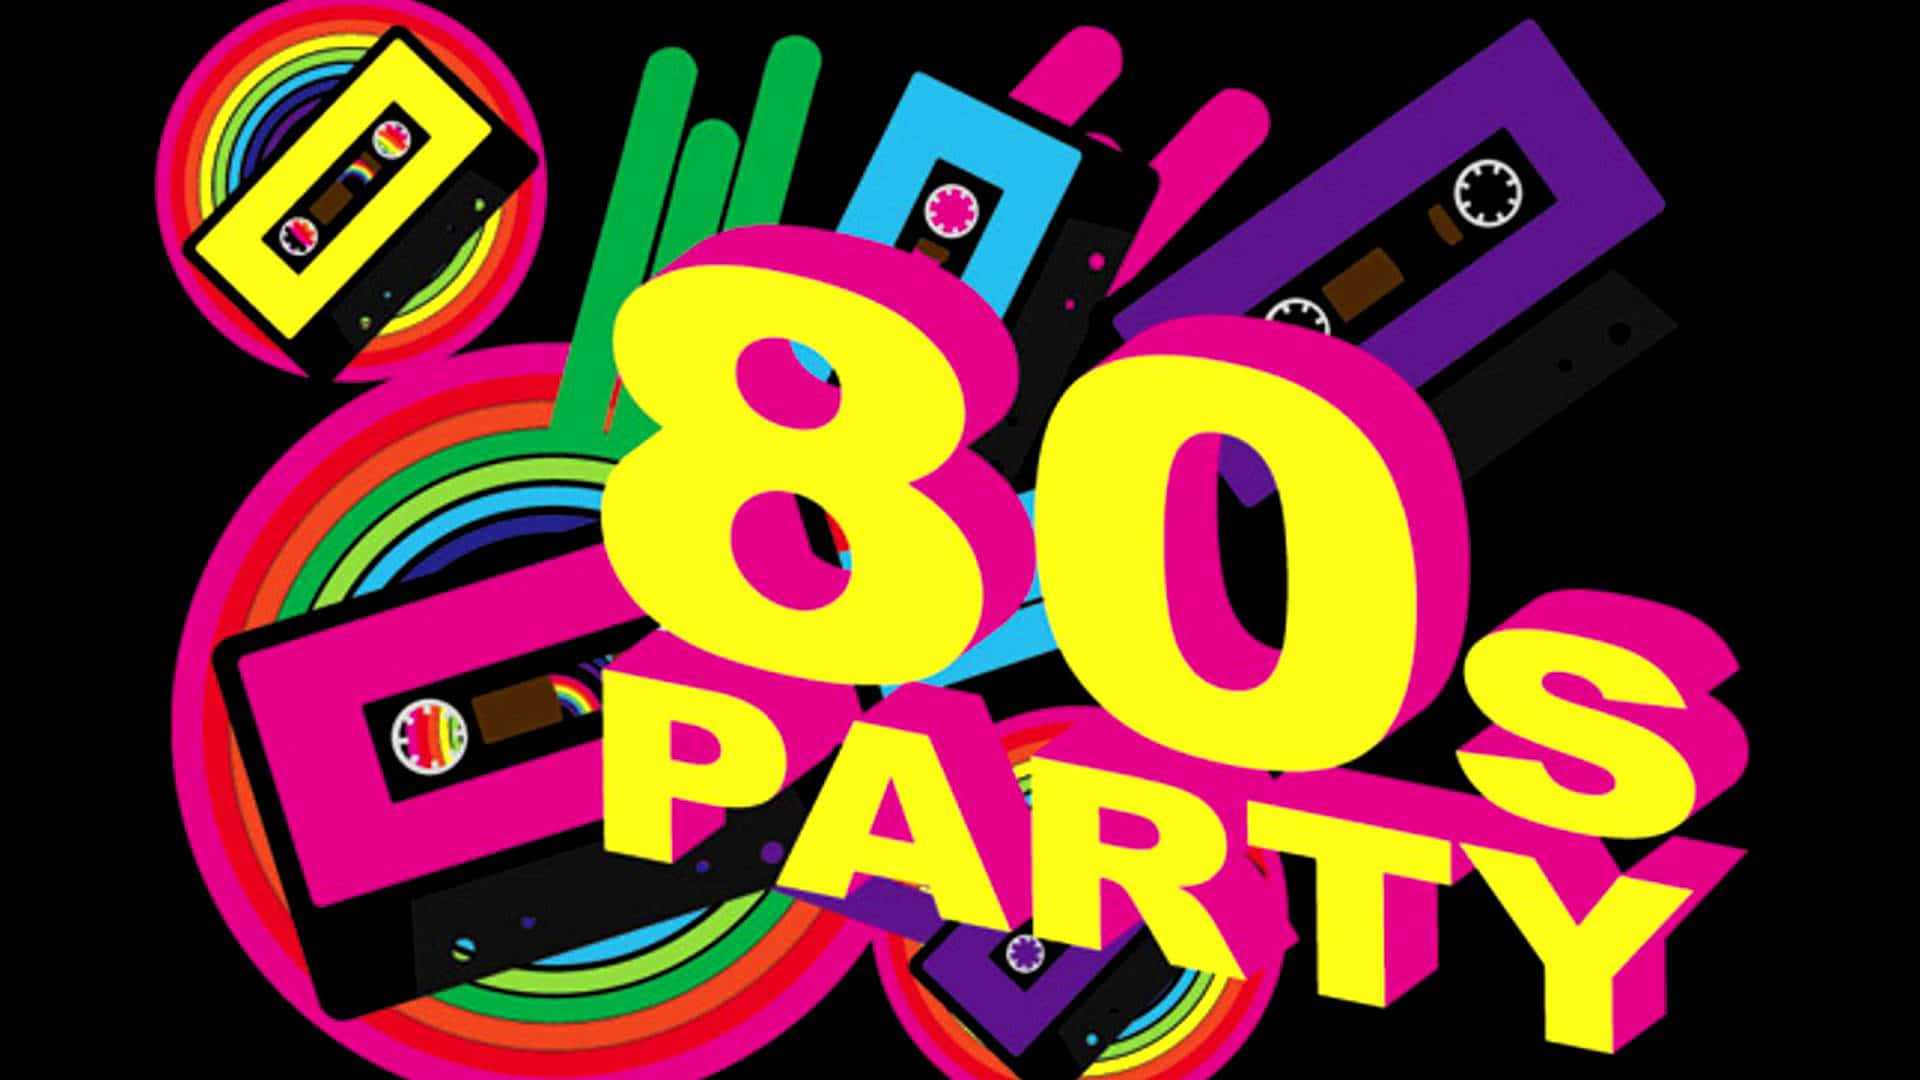 Сборка 80 90. Стиль 80х. Приглашение на вечеринку в стиле 80-х. Пригласительные на вечеринку 80-х. Вечеринка в стиле 80-х.